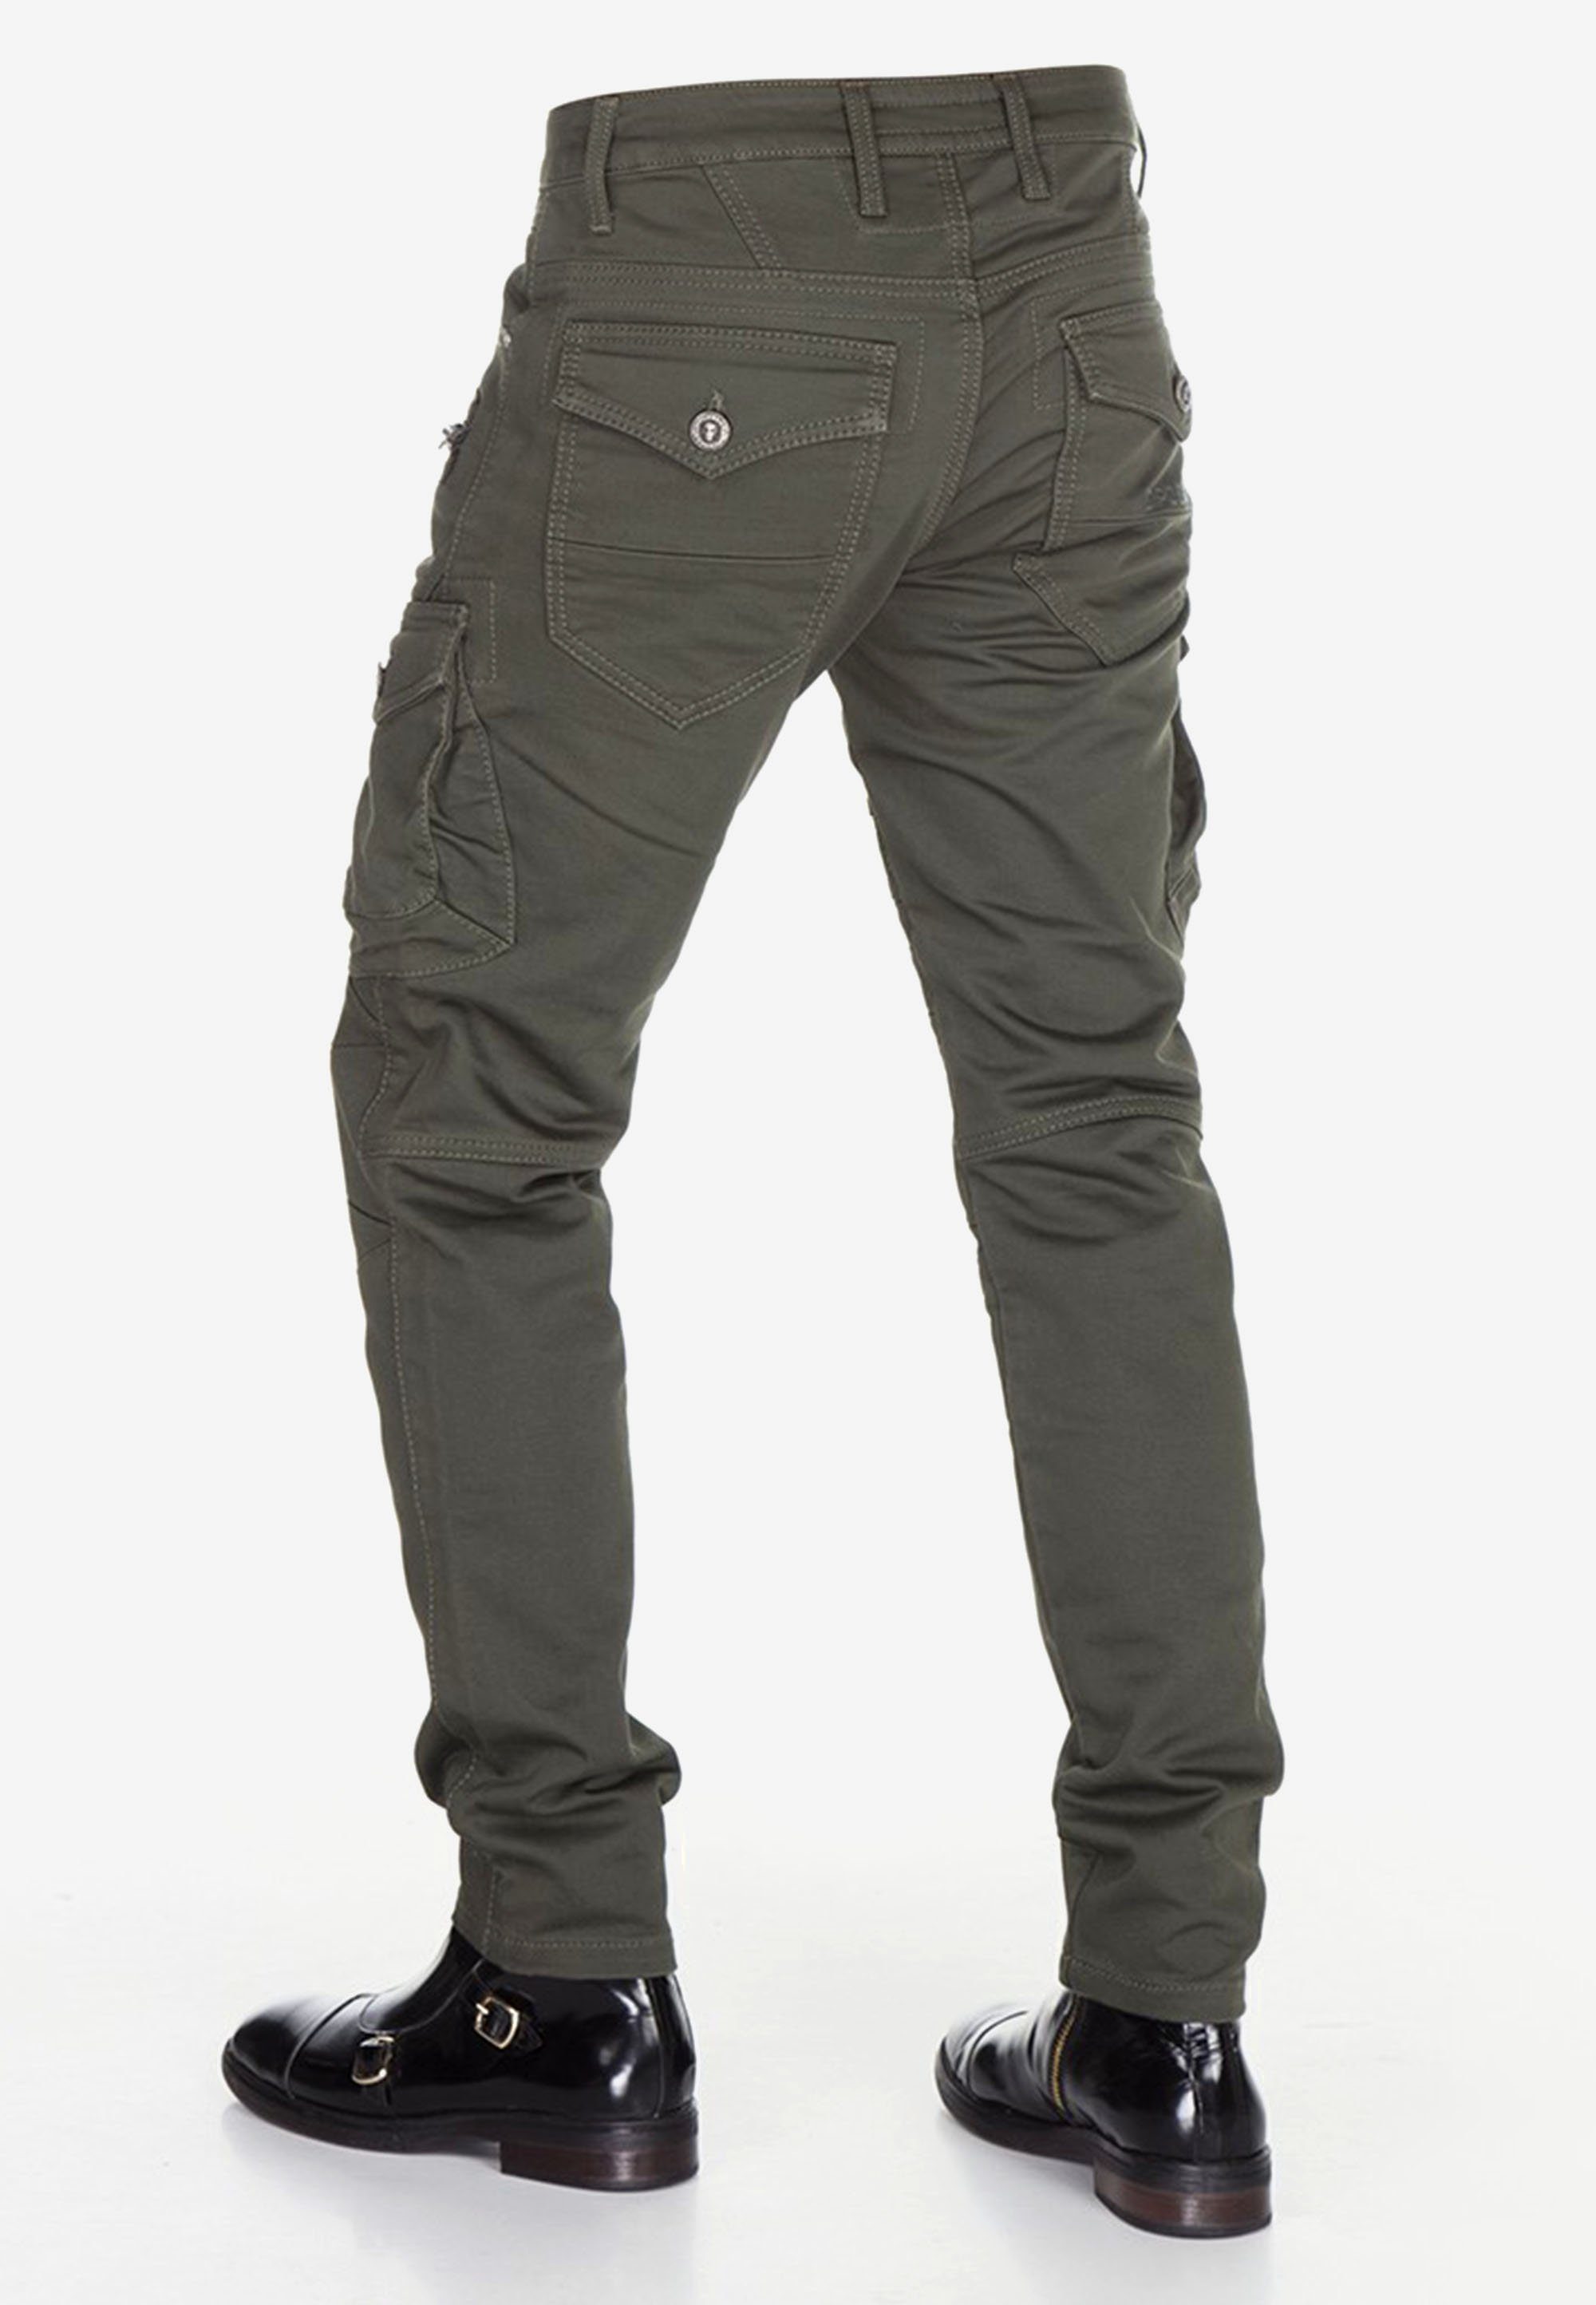 Cipo & Baxx Bequeme khaki angesagten Biker-Stil im Jeans